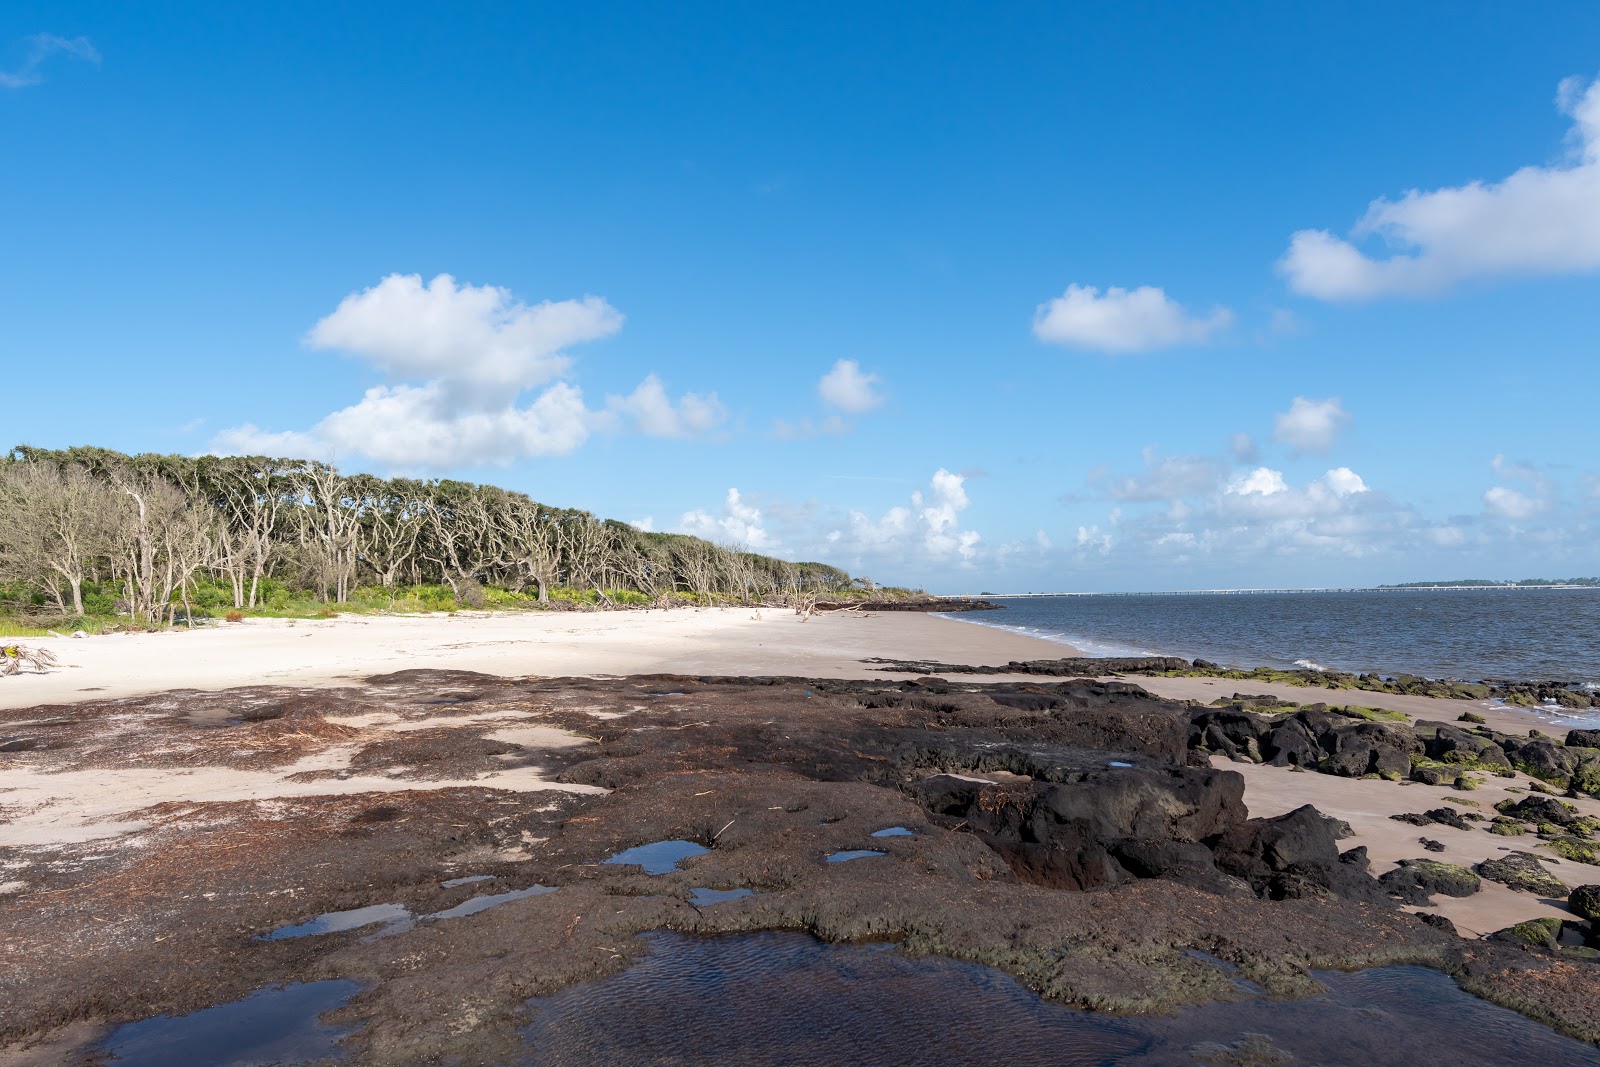 Photo de Boneyard beach - endroit populaire parmi les connaisseurs de la détente